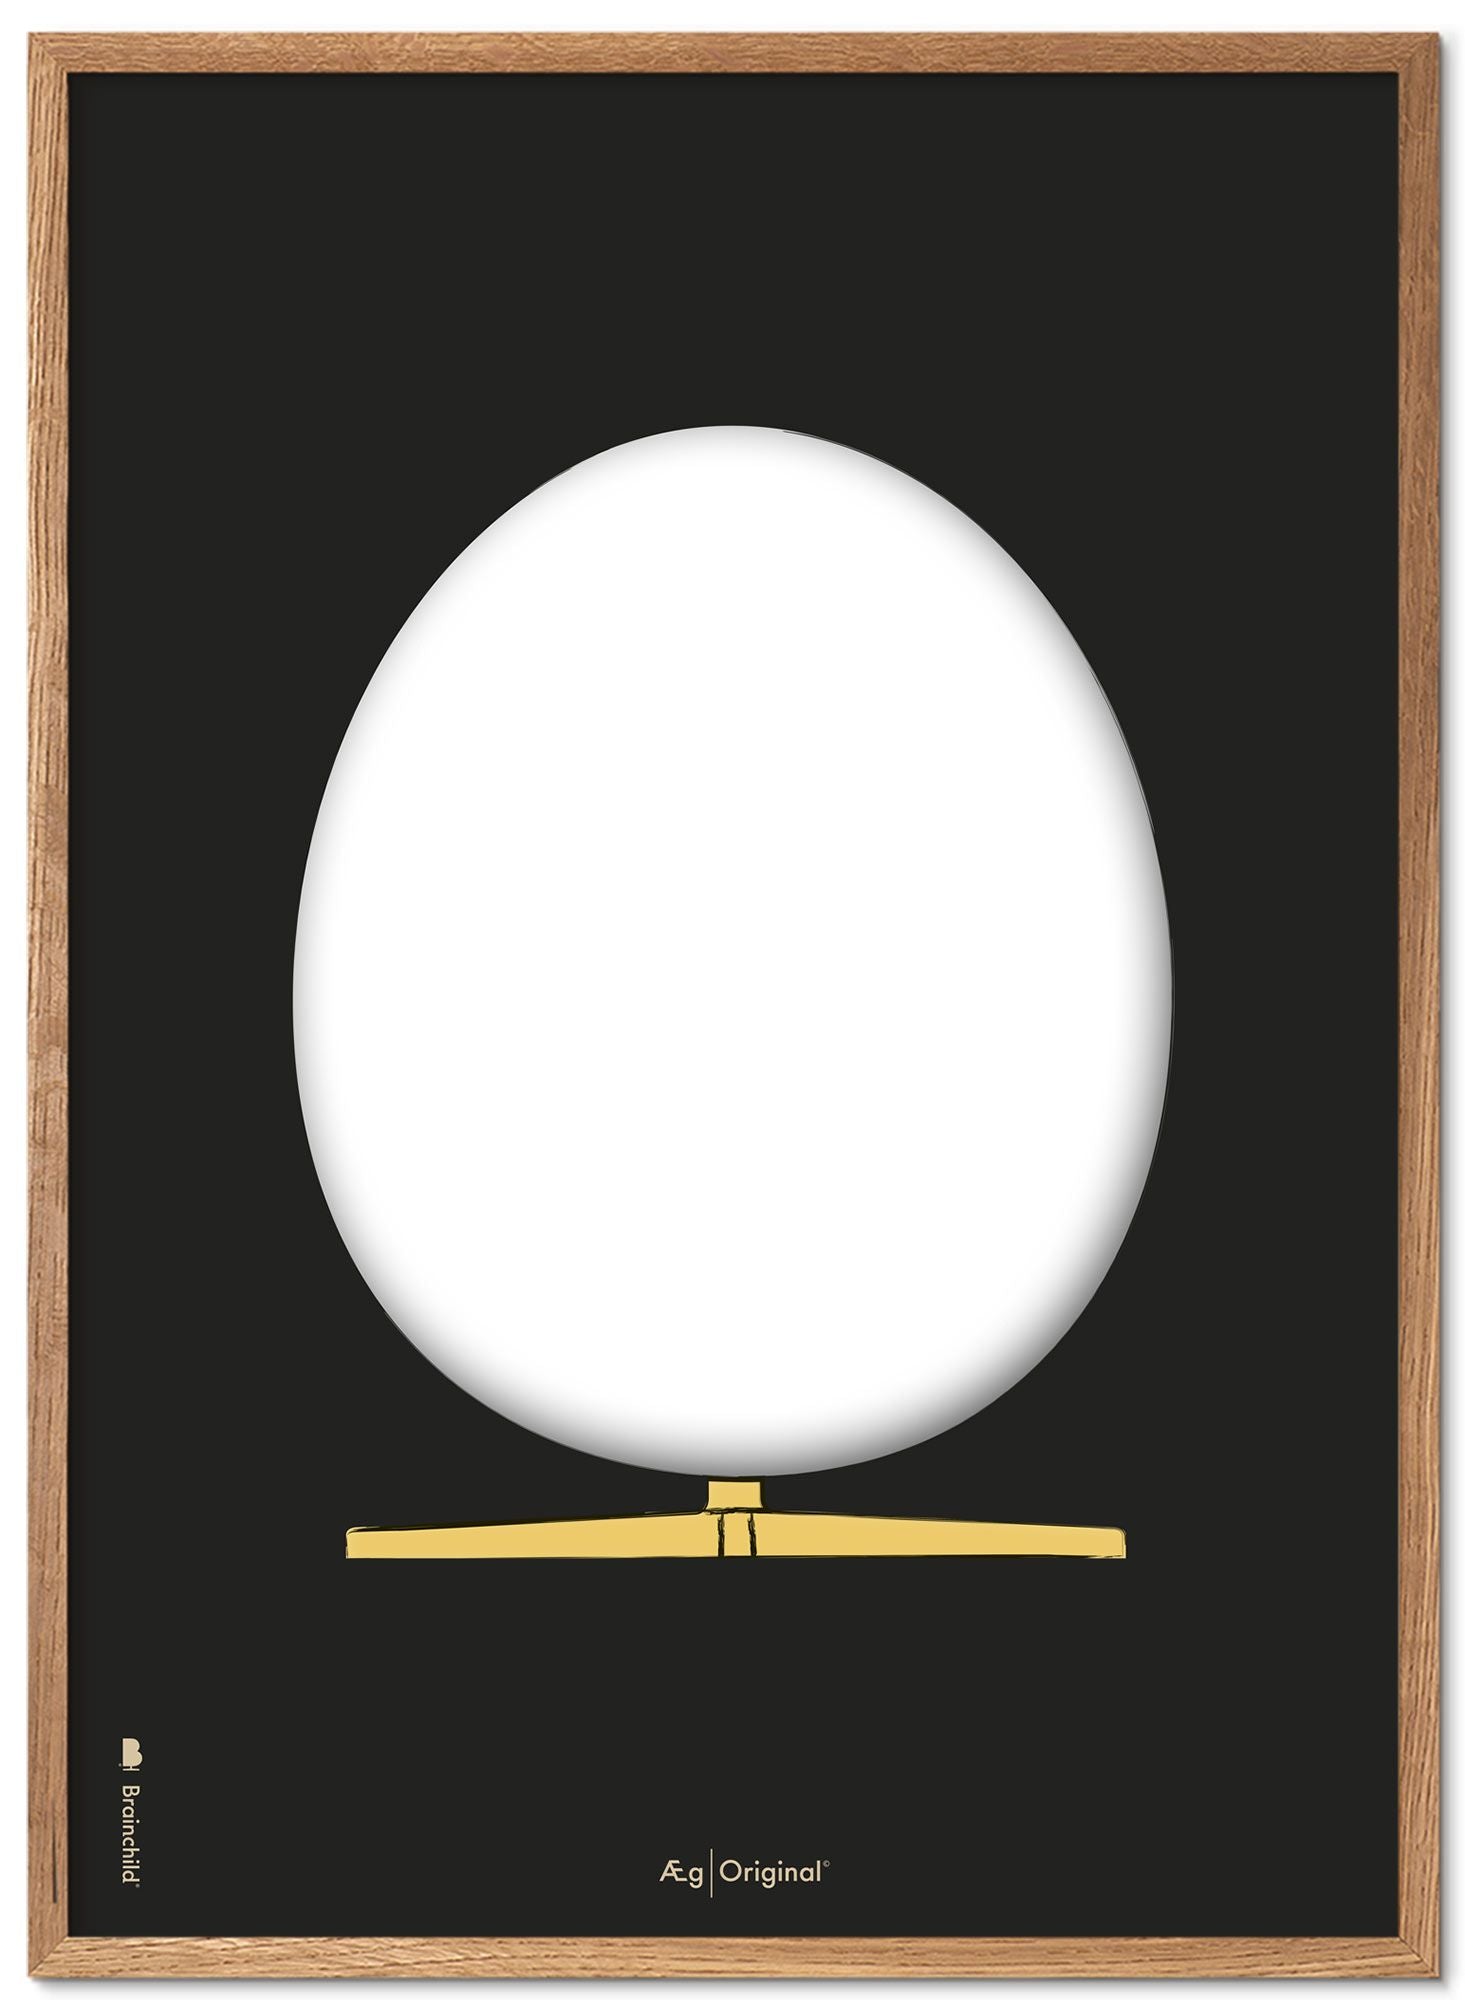 Brainchild The Egg Design Sketch Poster Frame Made of Light Wood 30x40 cm, svart bakgrund